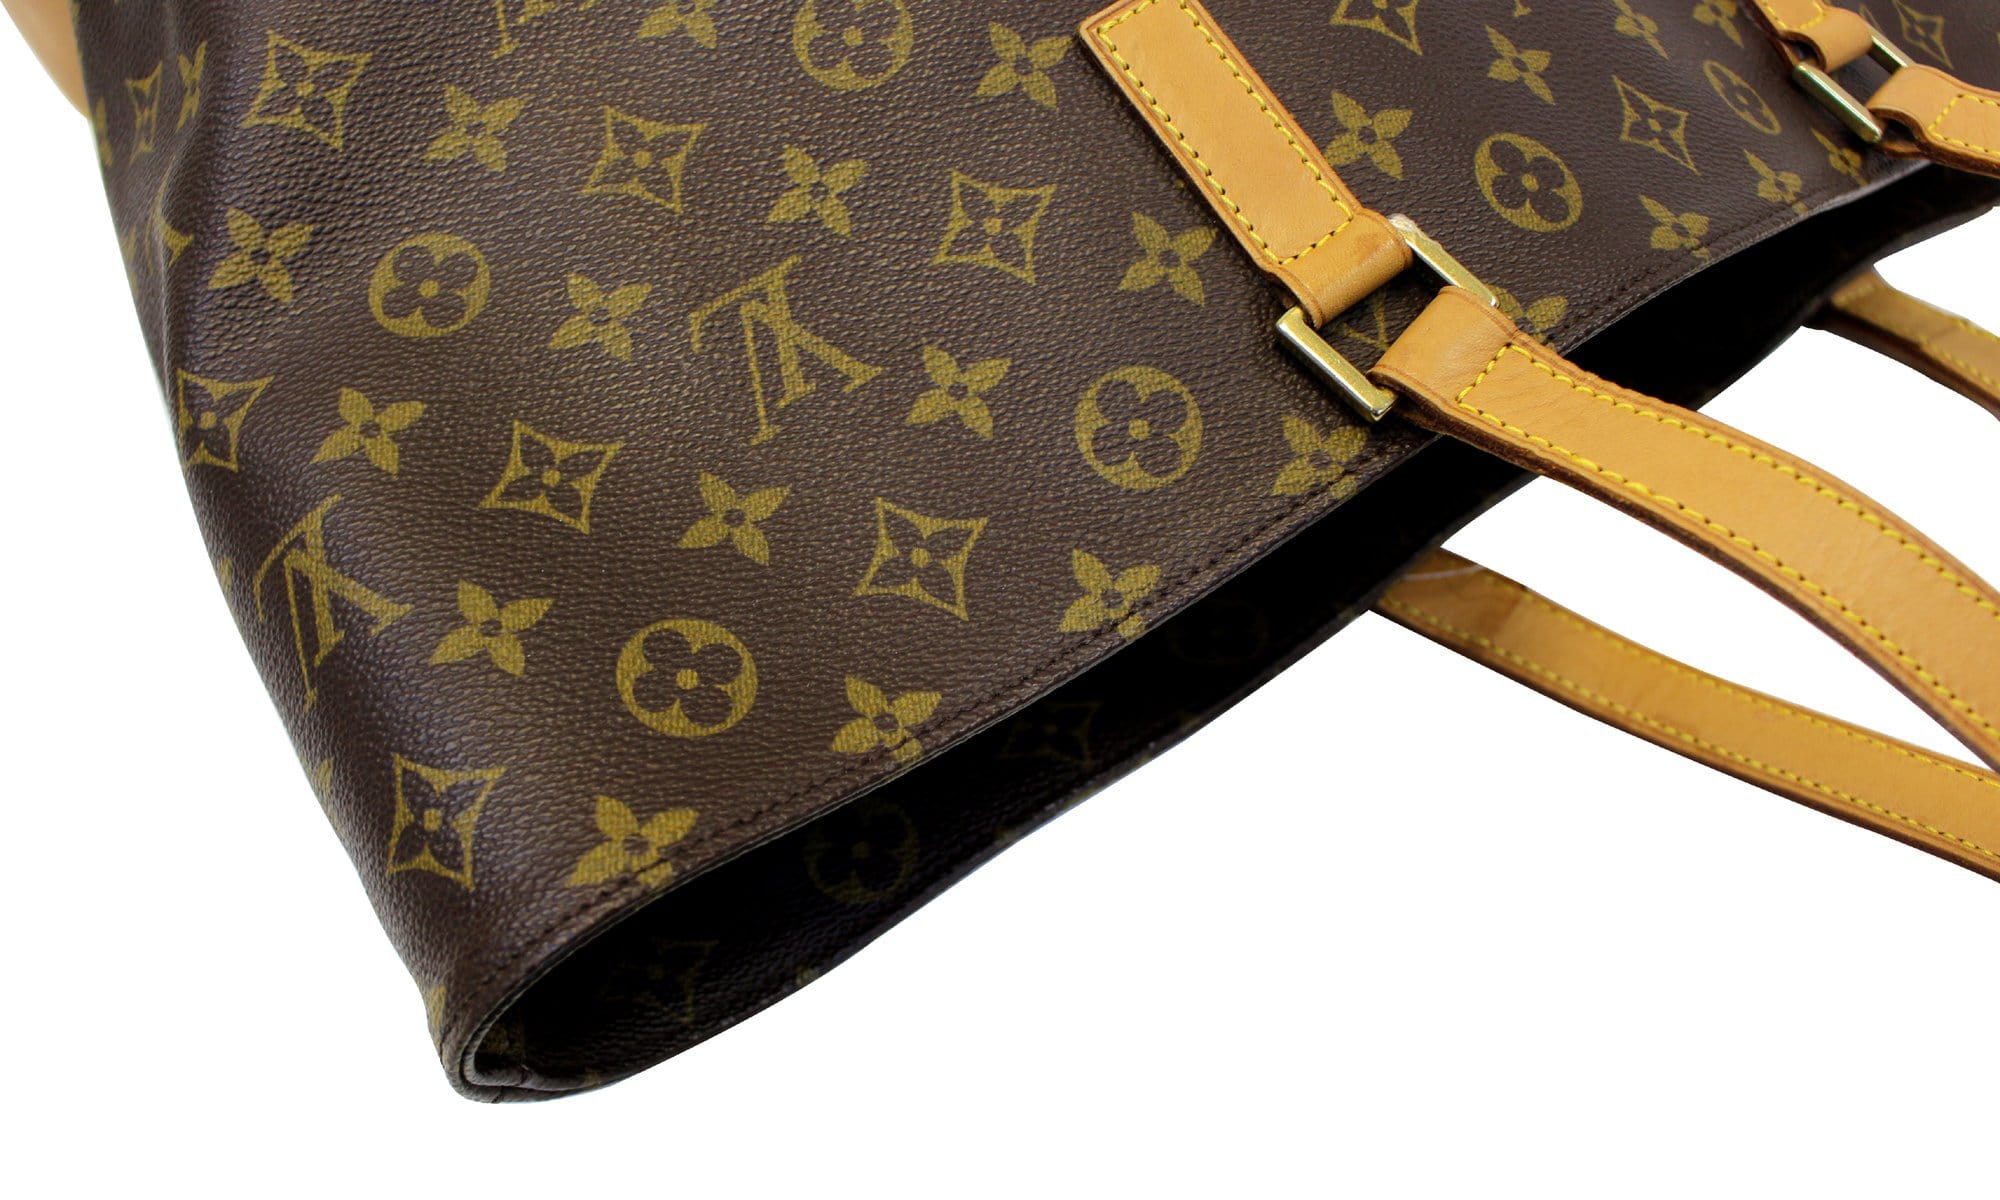 A handbag Cabas Alto tote bag  by Louis Vuitton. - Bukowskis